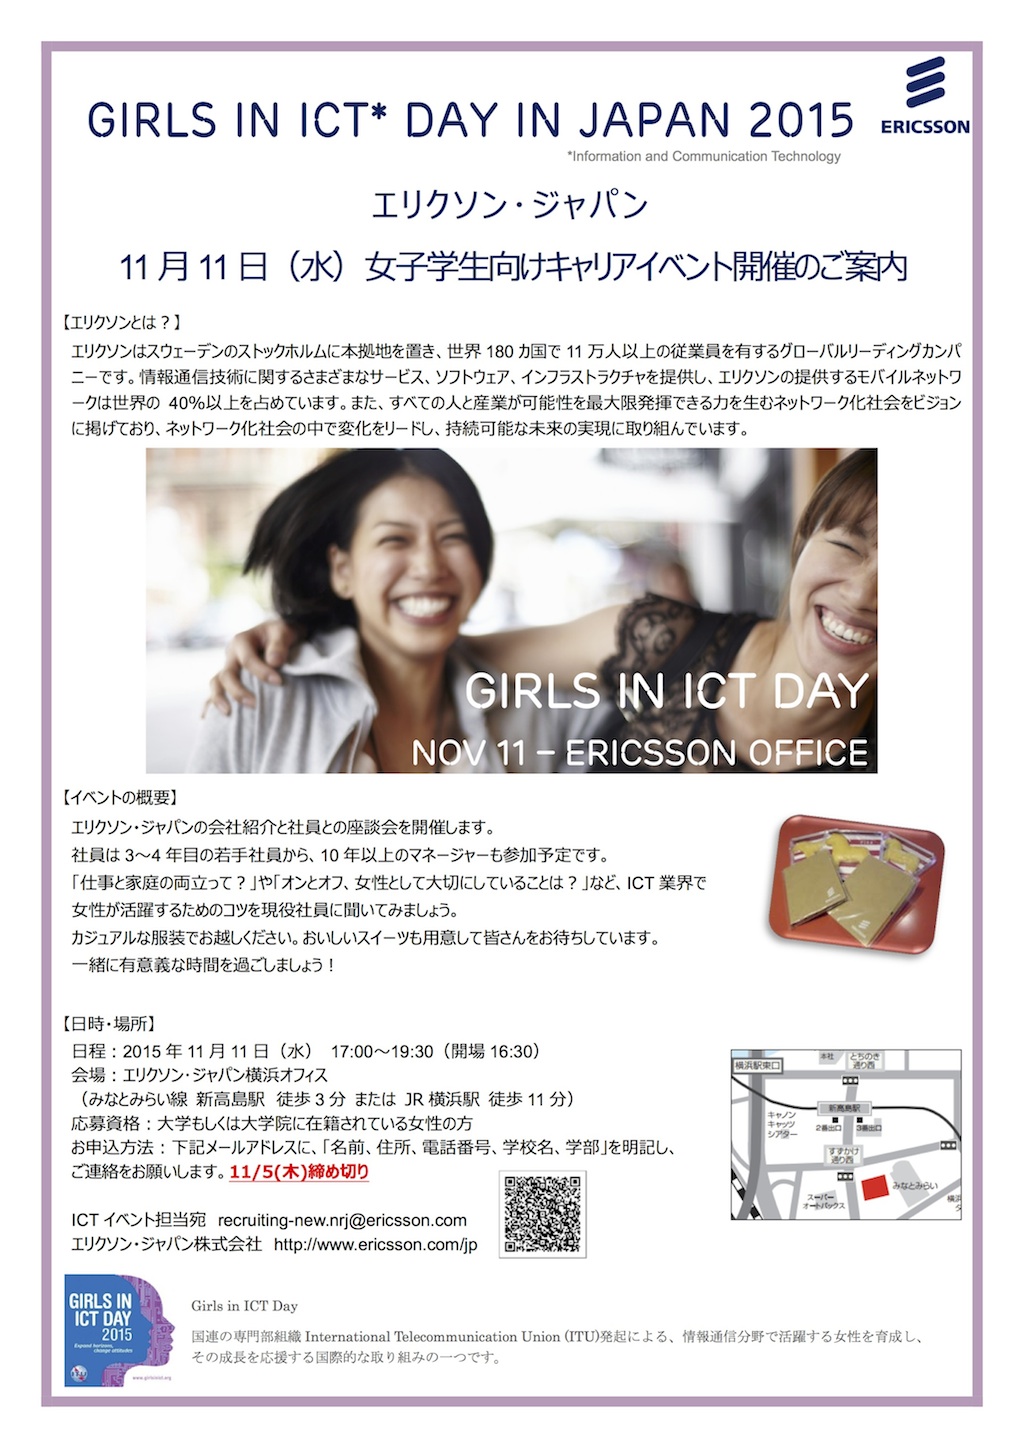 「ダイバーシティについて考える! エリクソン・ジャパン 女子学生向けキャリアイベント開催のお知らせ」の画像